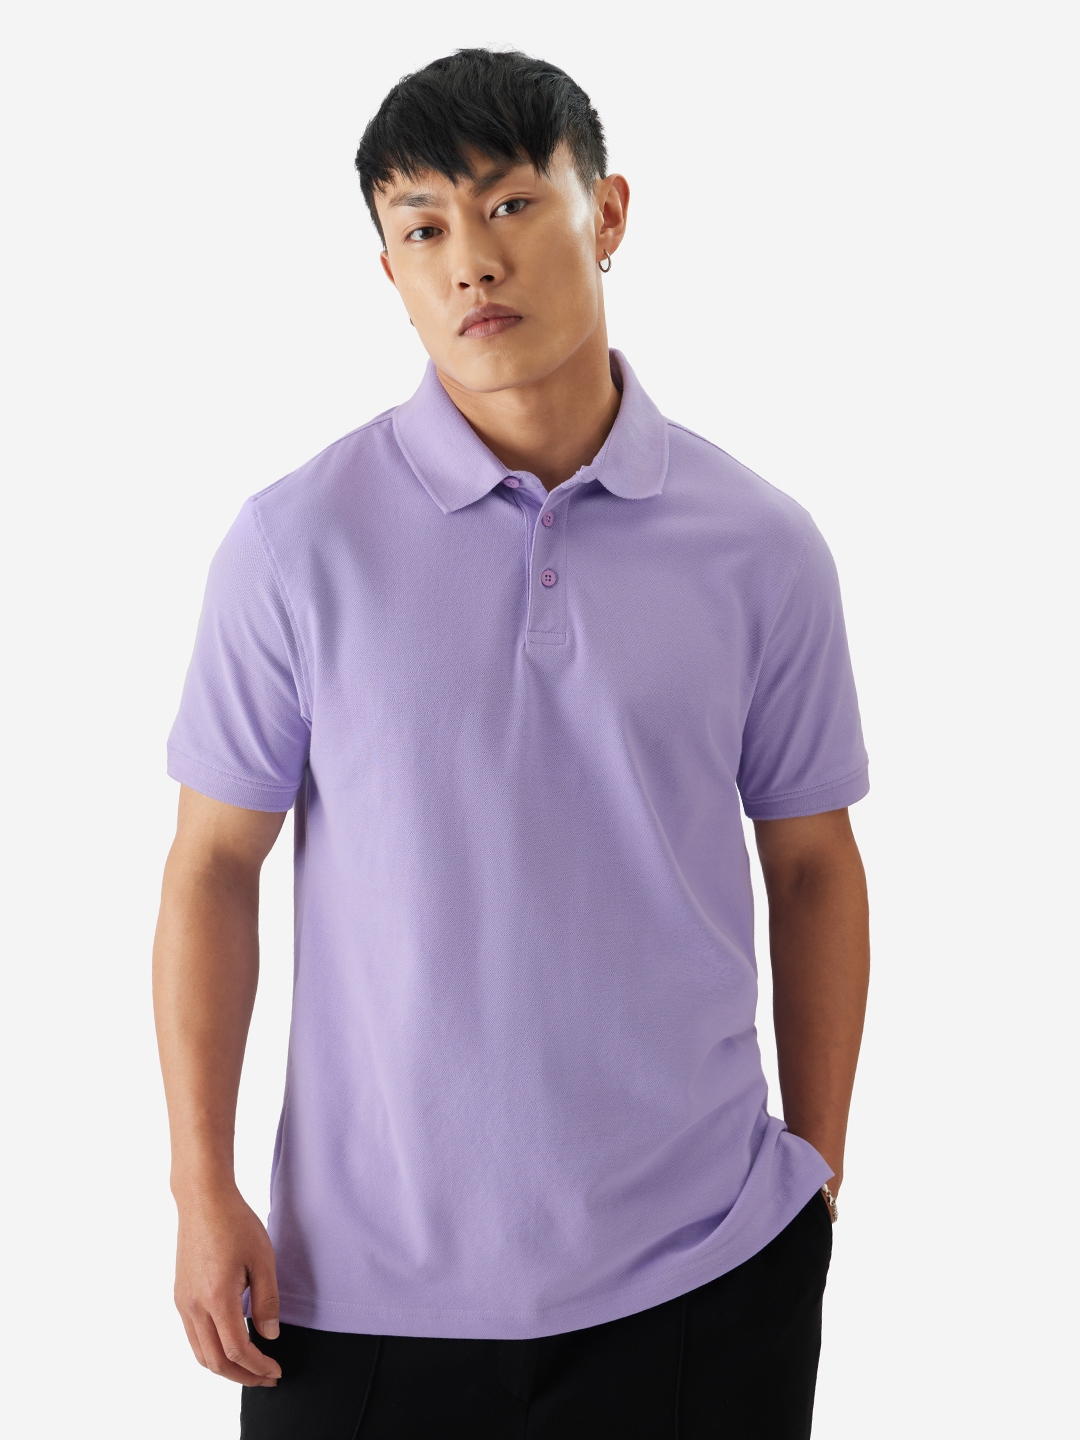 Men's Solids: Deep Lavender Polo T-Shirt